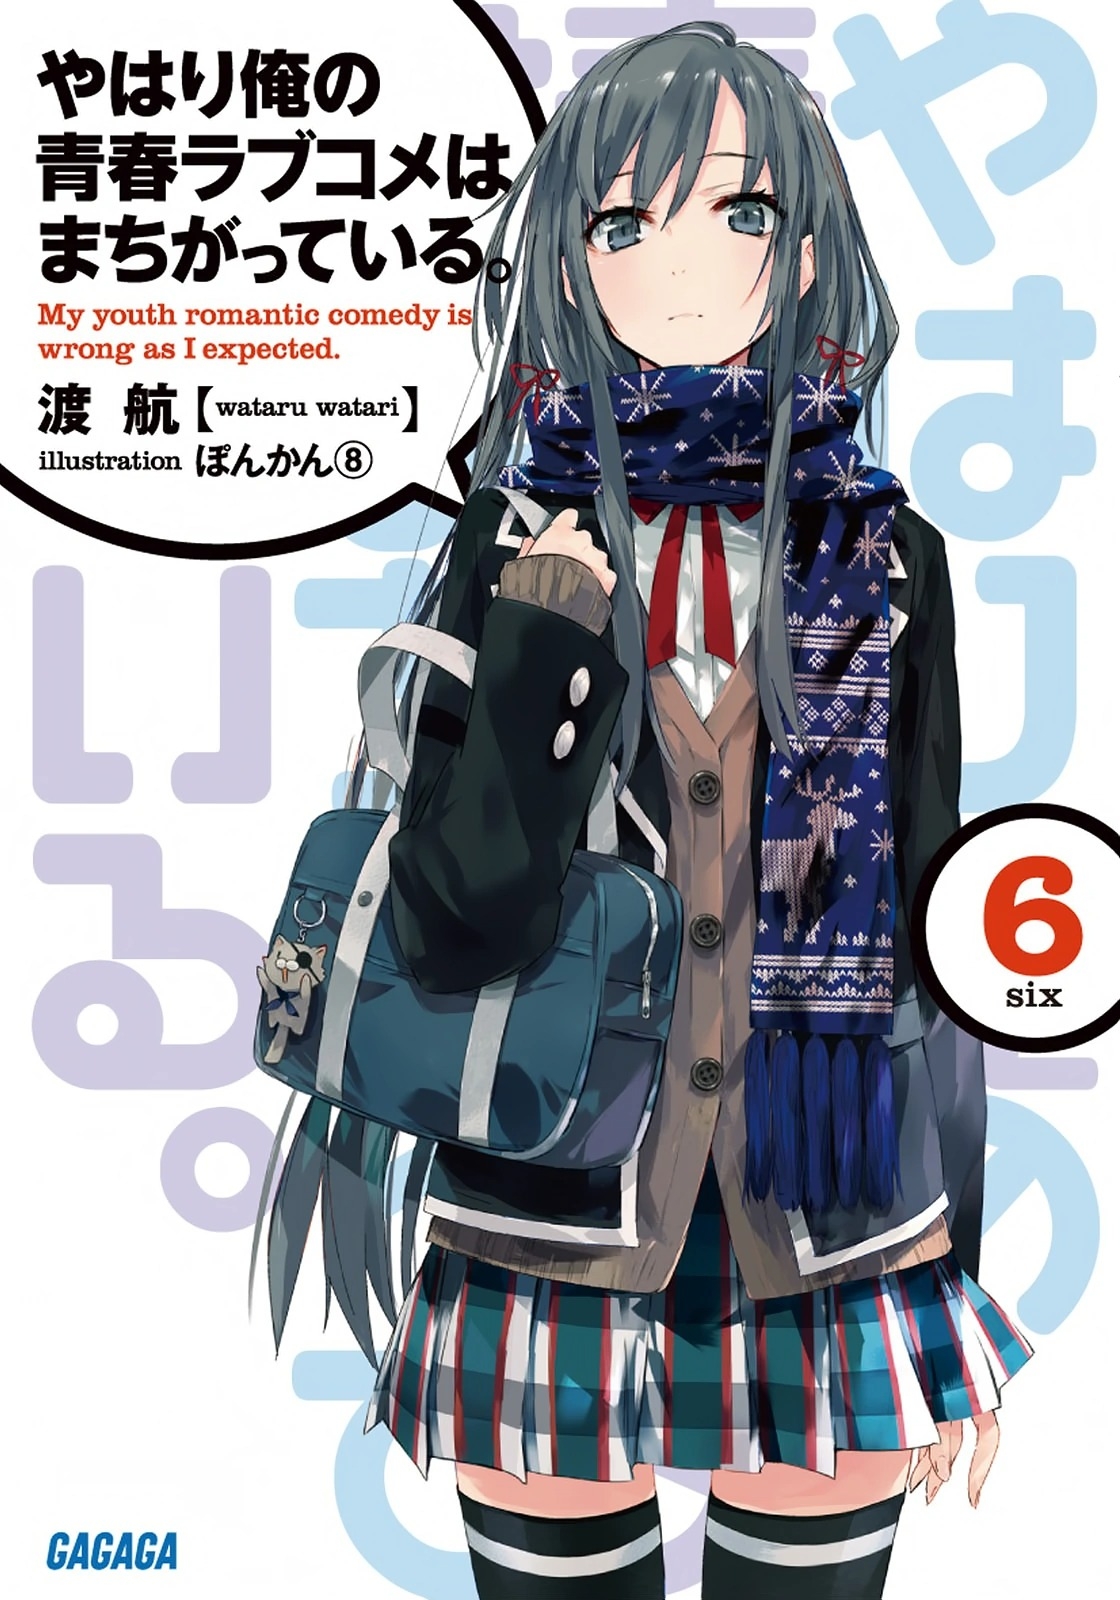 [light novel] yahari ore no seishun love come wa machigatteiru illust compliation 61